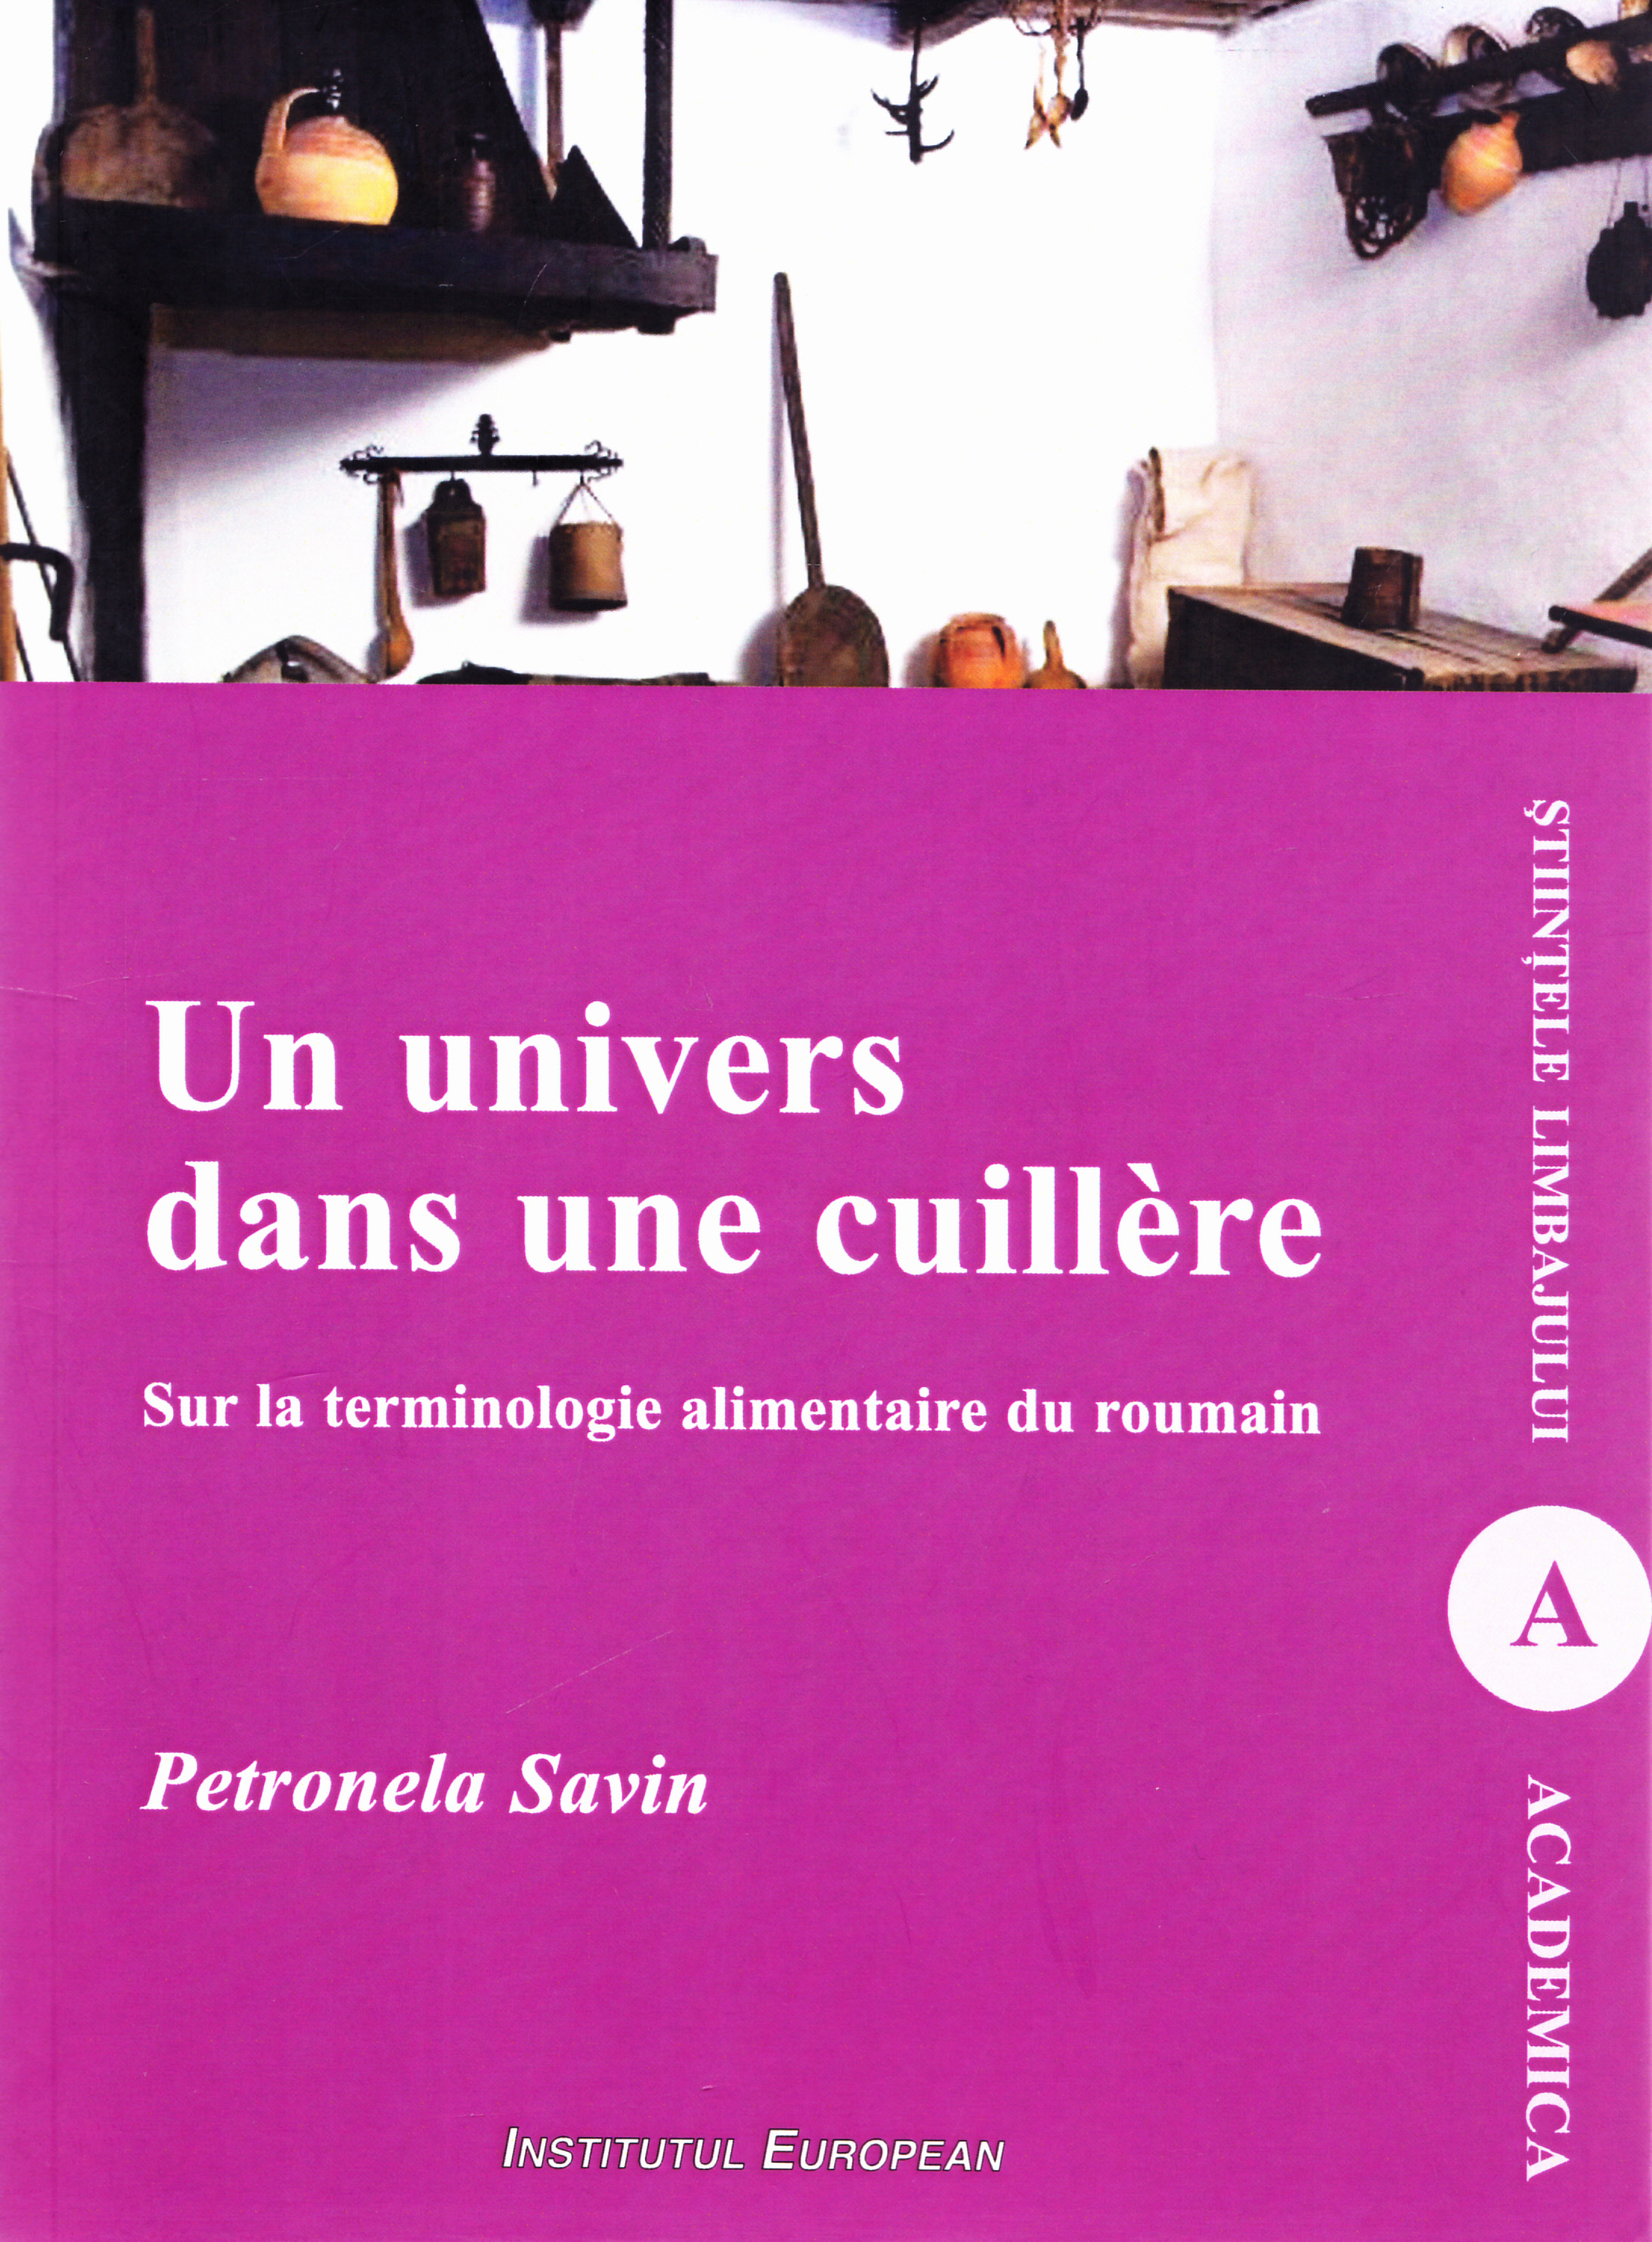 Un univers dans une cuillere - Petronela Savin